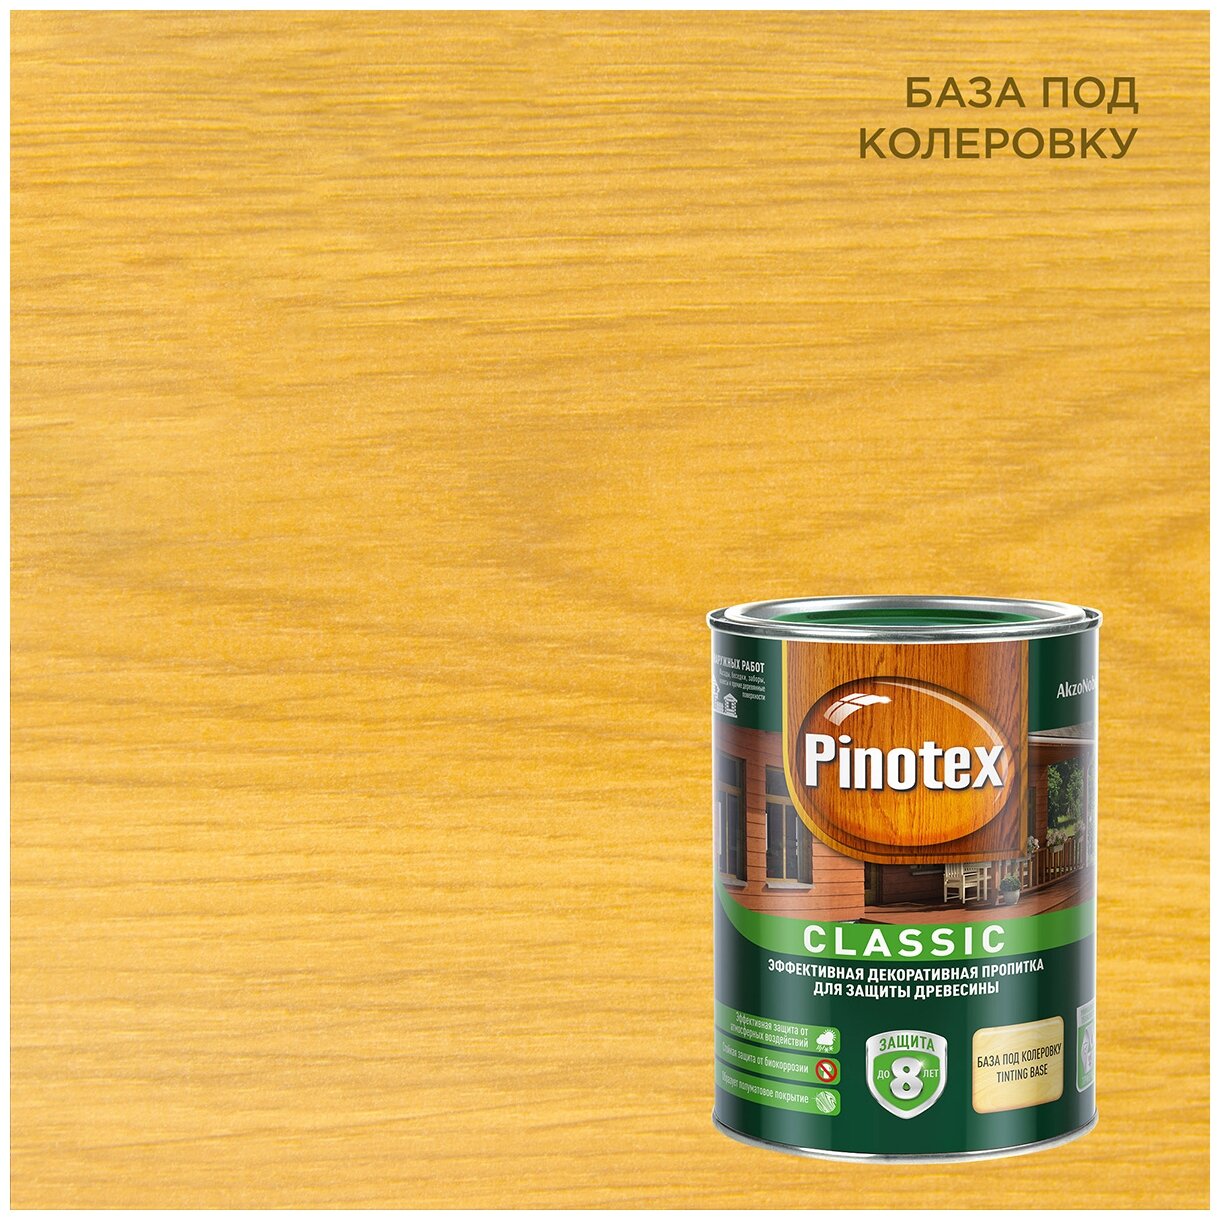       (1) / PINOTEX Classic        (1)